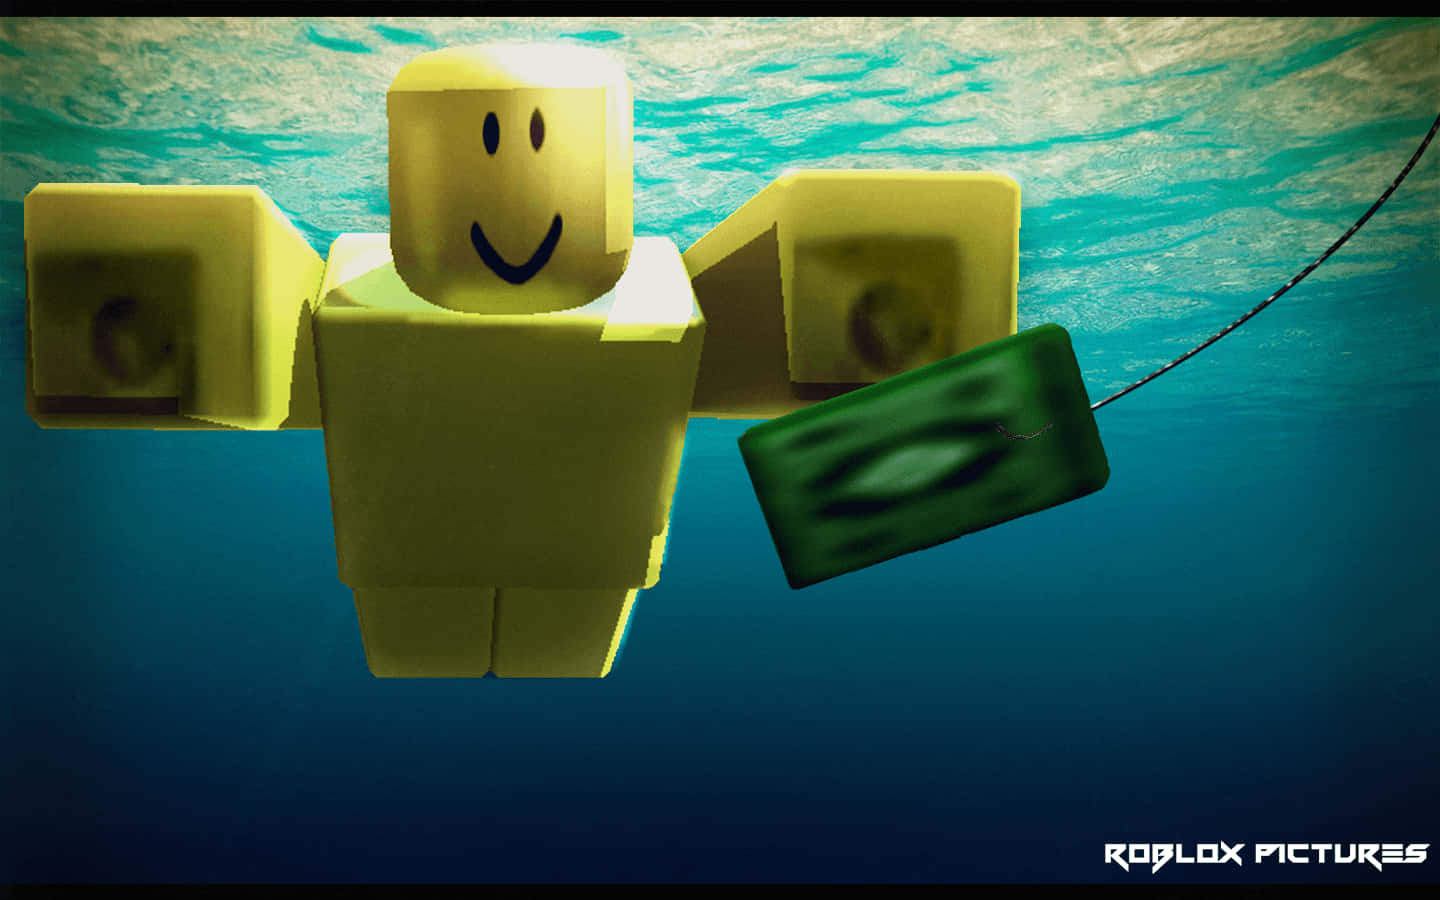 Unafigura De Lego Está Flotando En El Agua Fondo de pantalla